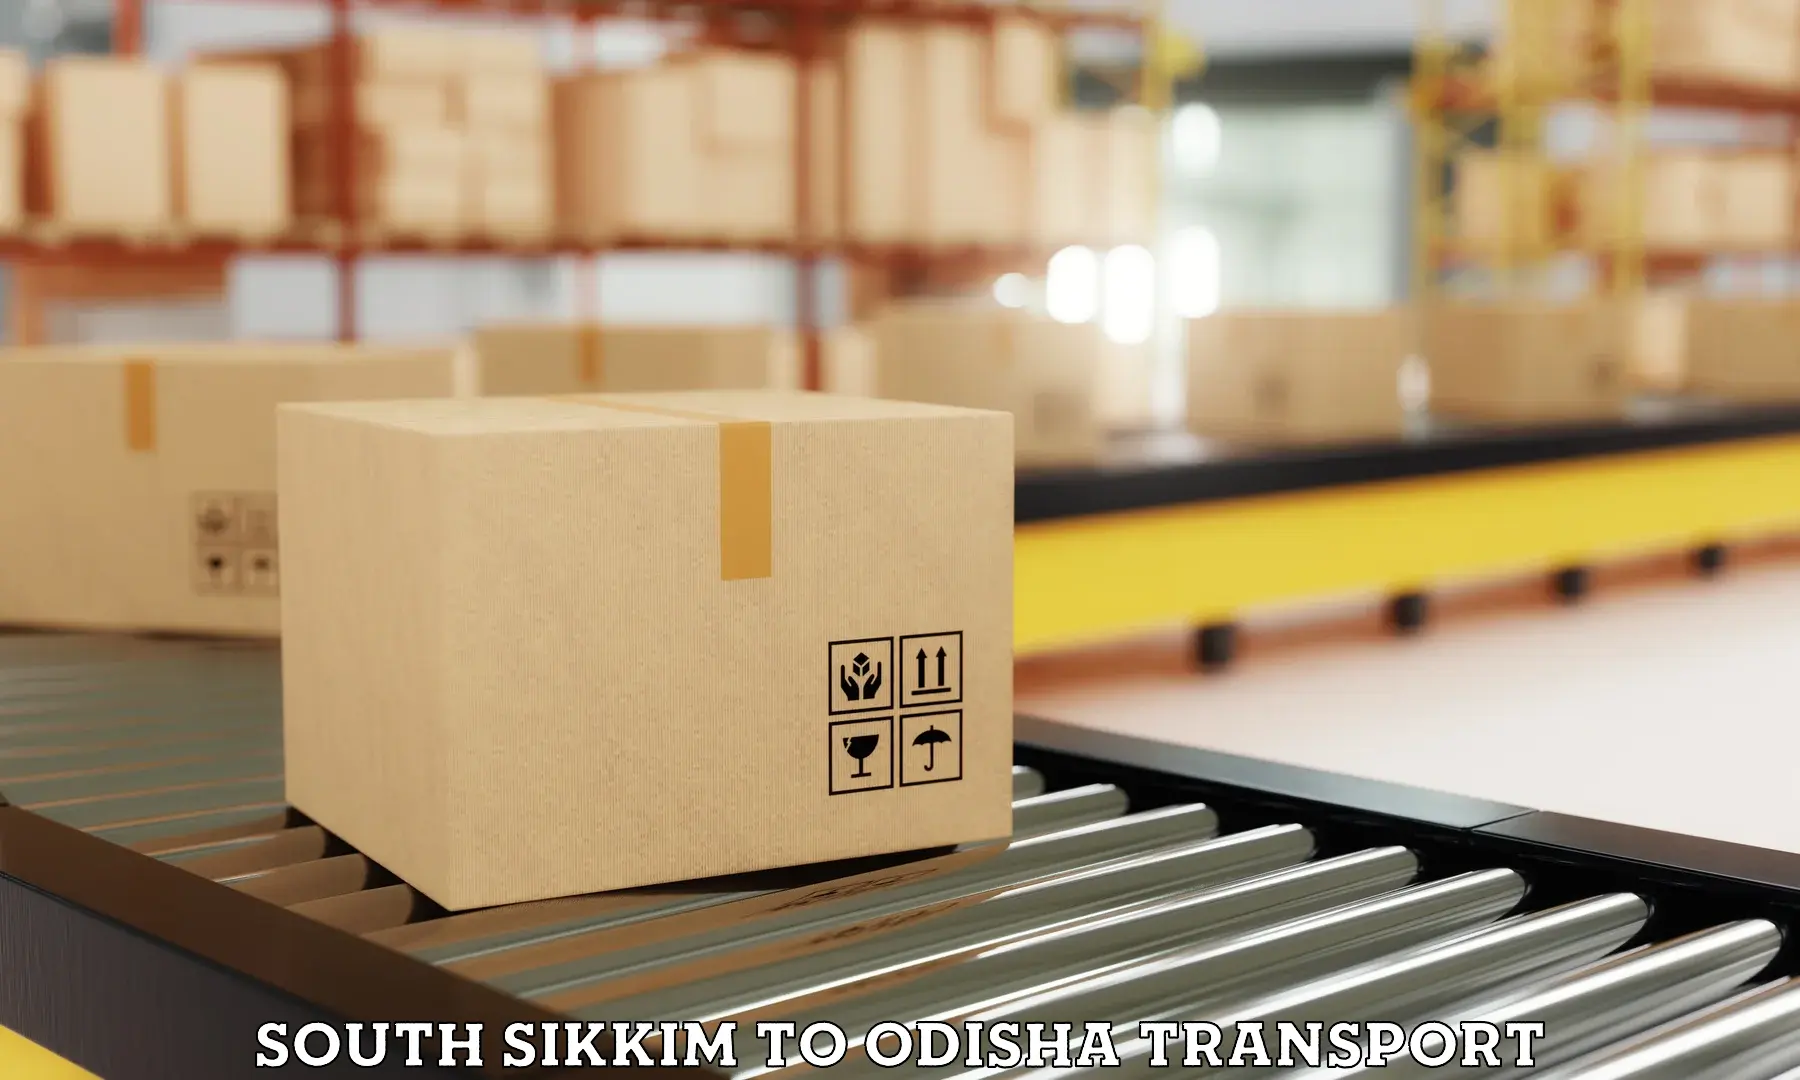 Nearby transport service South Sikkim to Tikiri